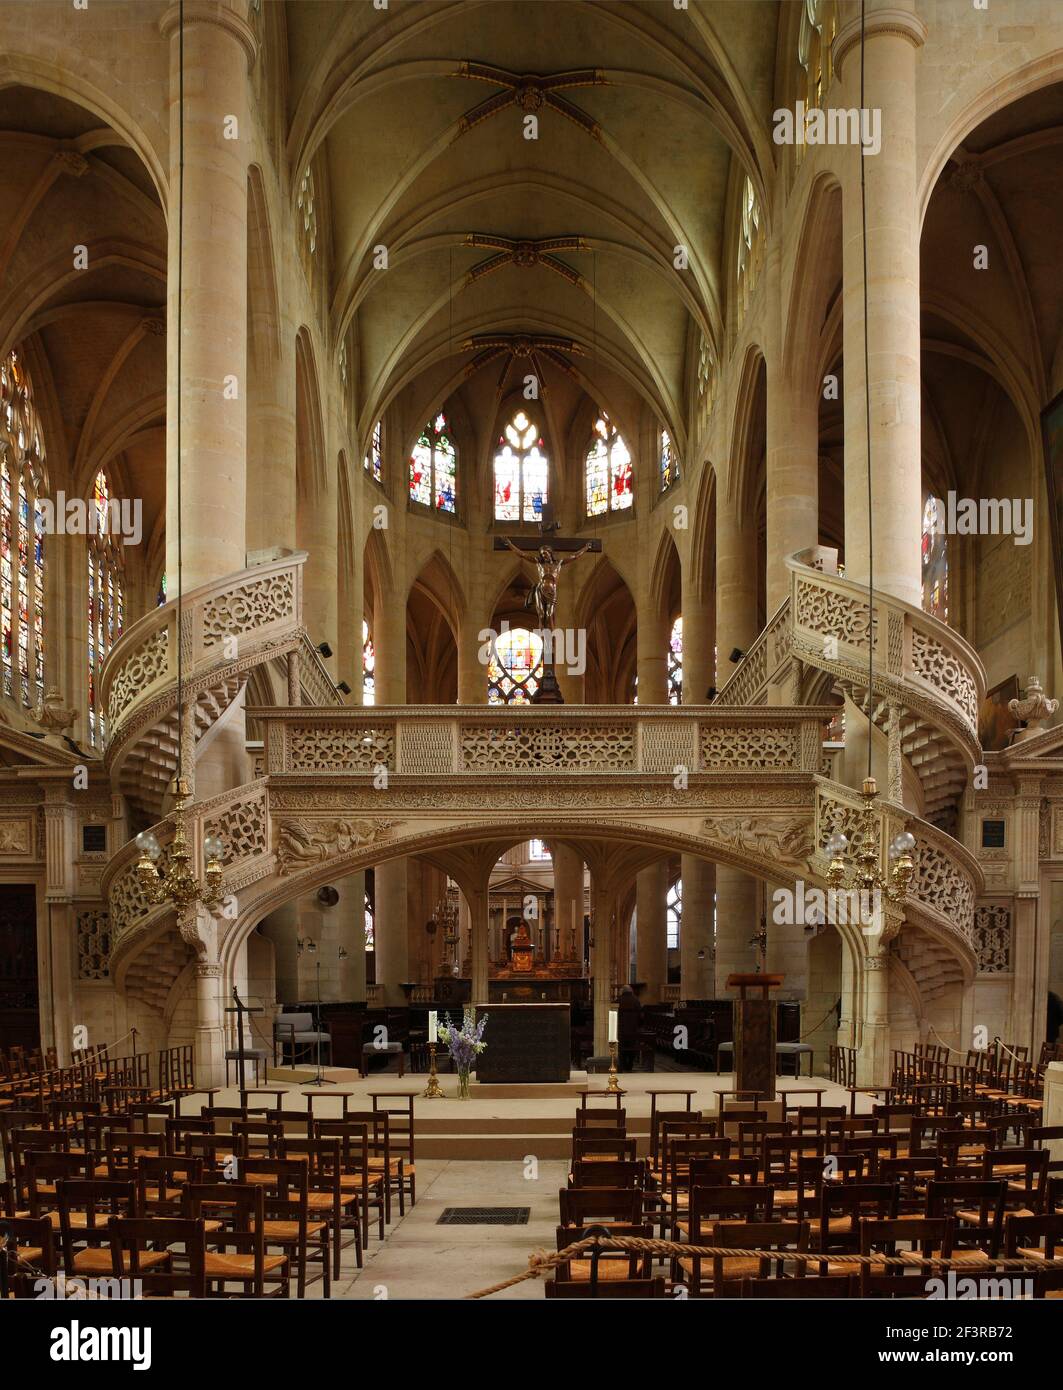 Escaliers en colimaçon de l'église de la Renaissance de Saint Etienne du Mont, contenant le sanctuaire de Sainte Geneviève, patron de Paris, France Banque D'Images